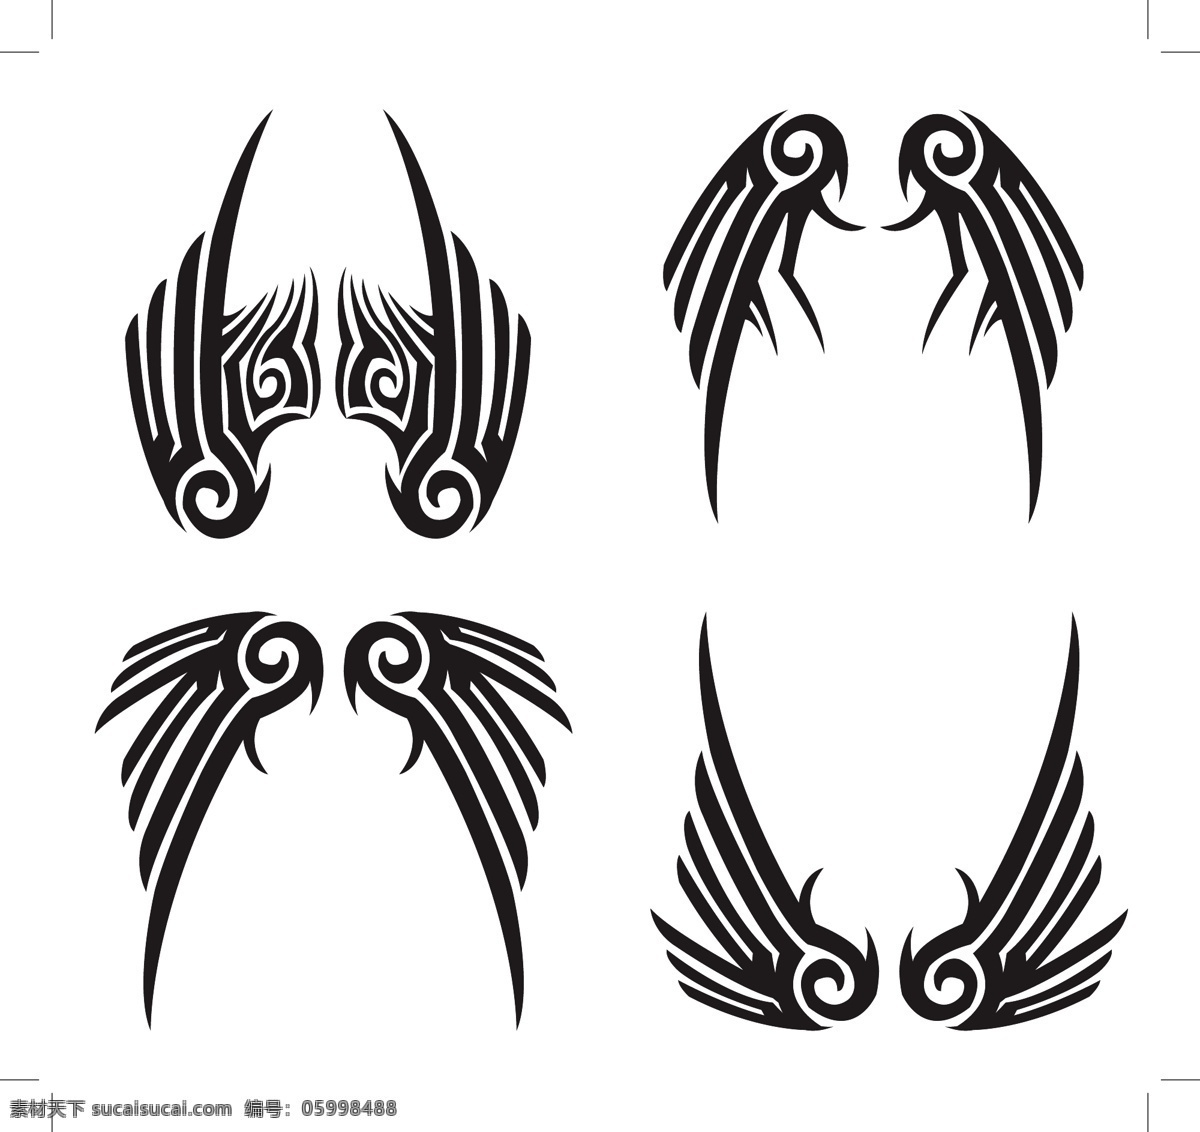 黑色 翅膀 设计素材 翅膀设计 矢量翅膀 翅膀素材 创意翅膀 矢量素材 底纹边框 白色